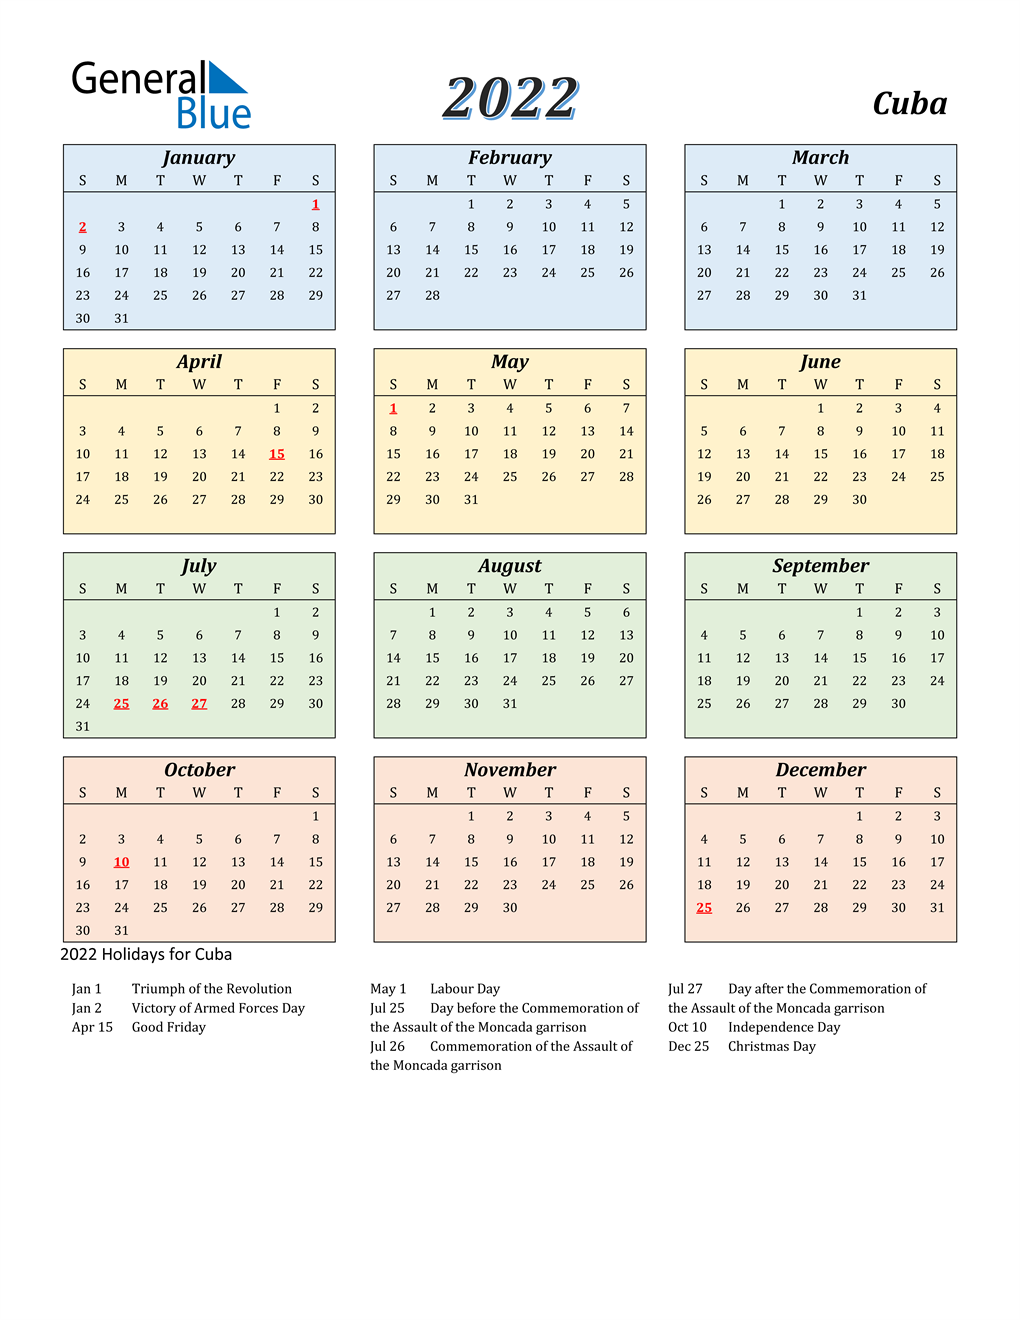 Cu Calendar 2022 2022 Cuba Calendar With Holidays